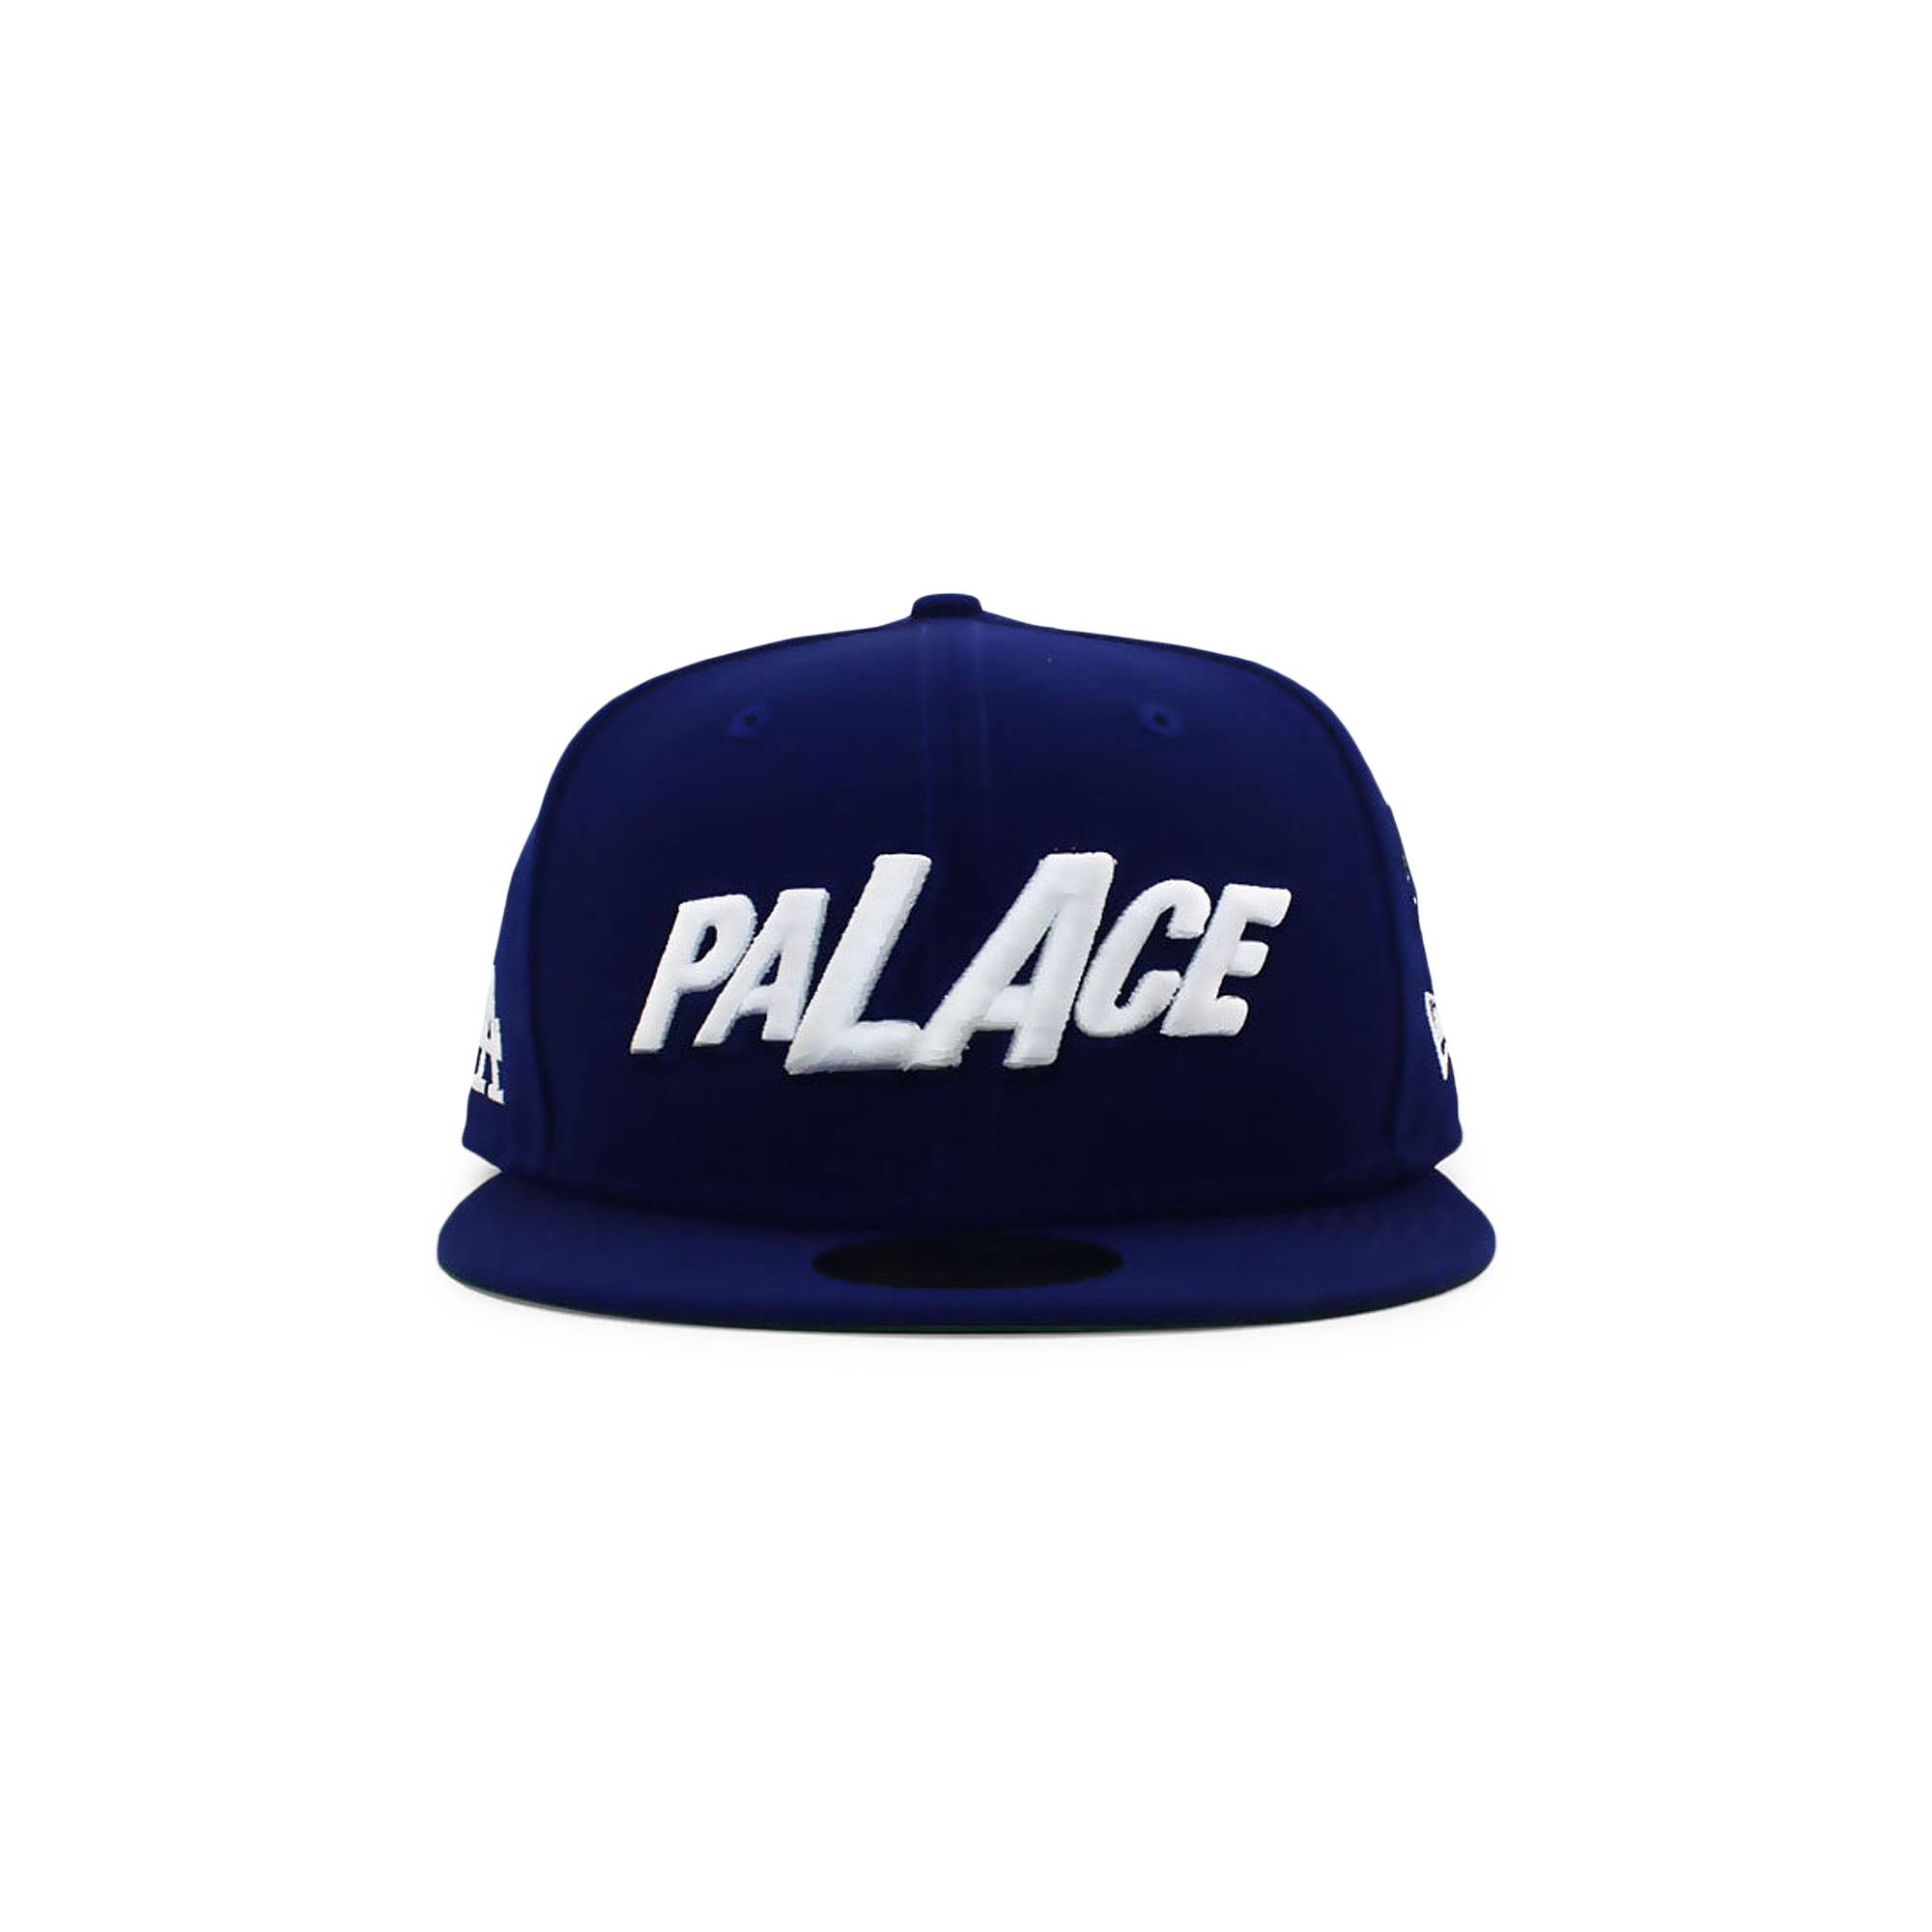 Palace x New Era LA Fitted Hat 'Blue' - 1